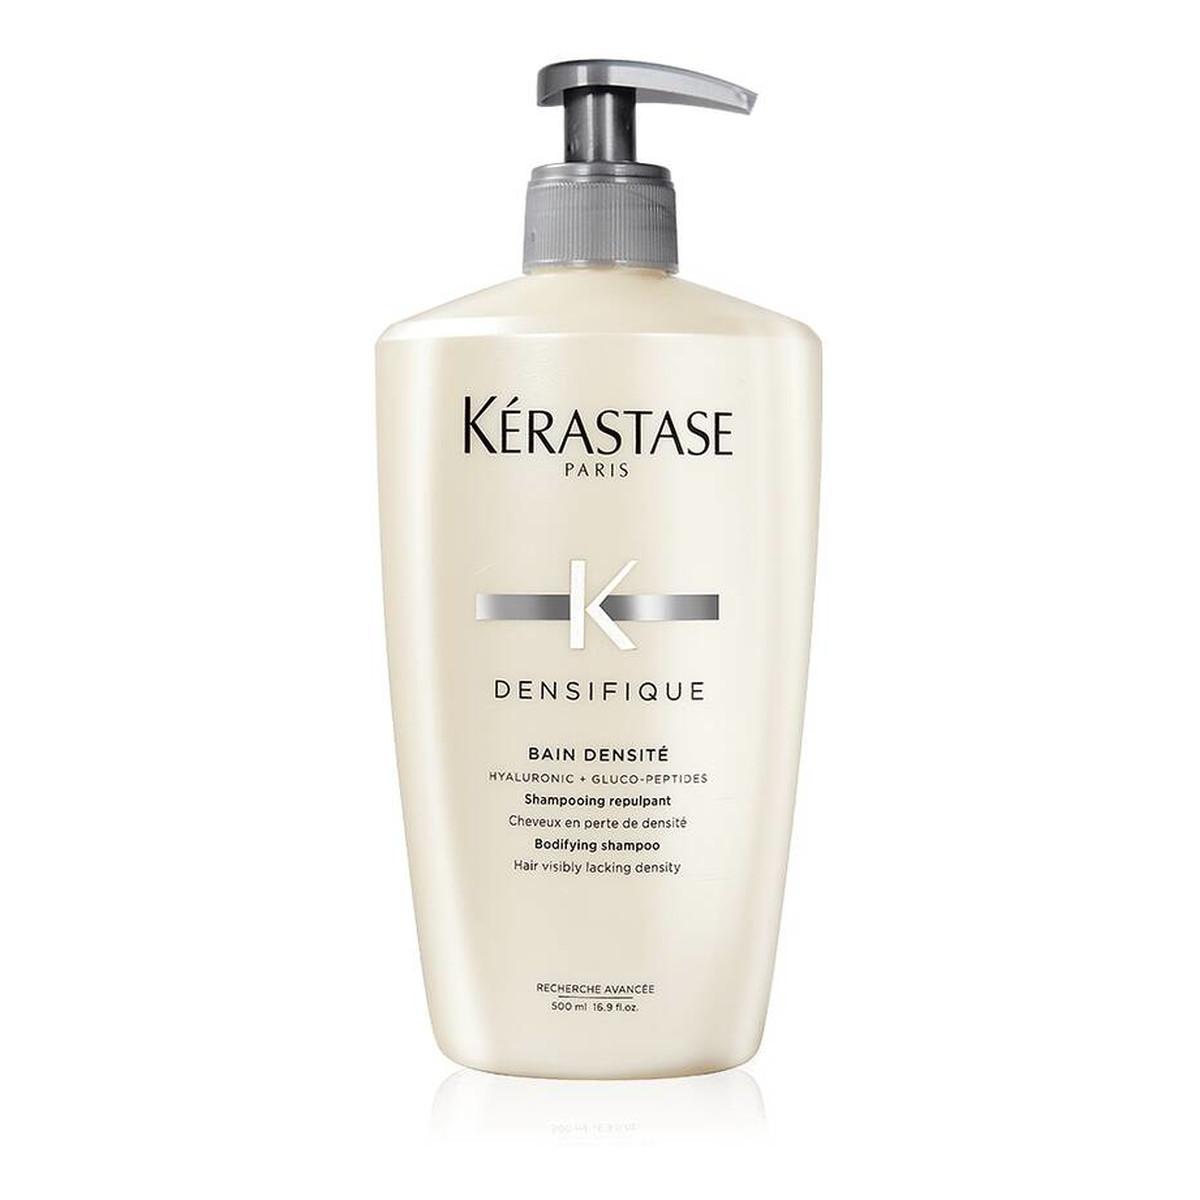 Kerastase Densifique bain densité bodifying shampoo szampon do włosów tracących gęstość 500ml